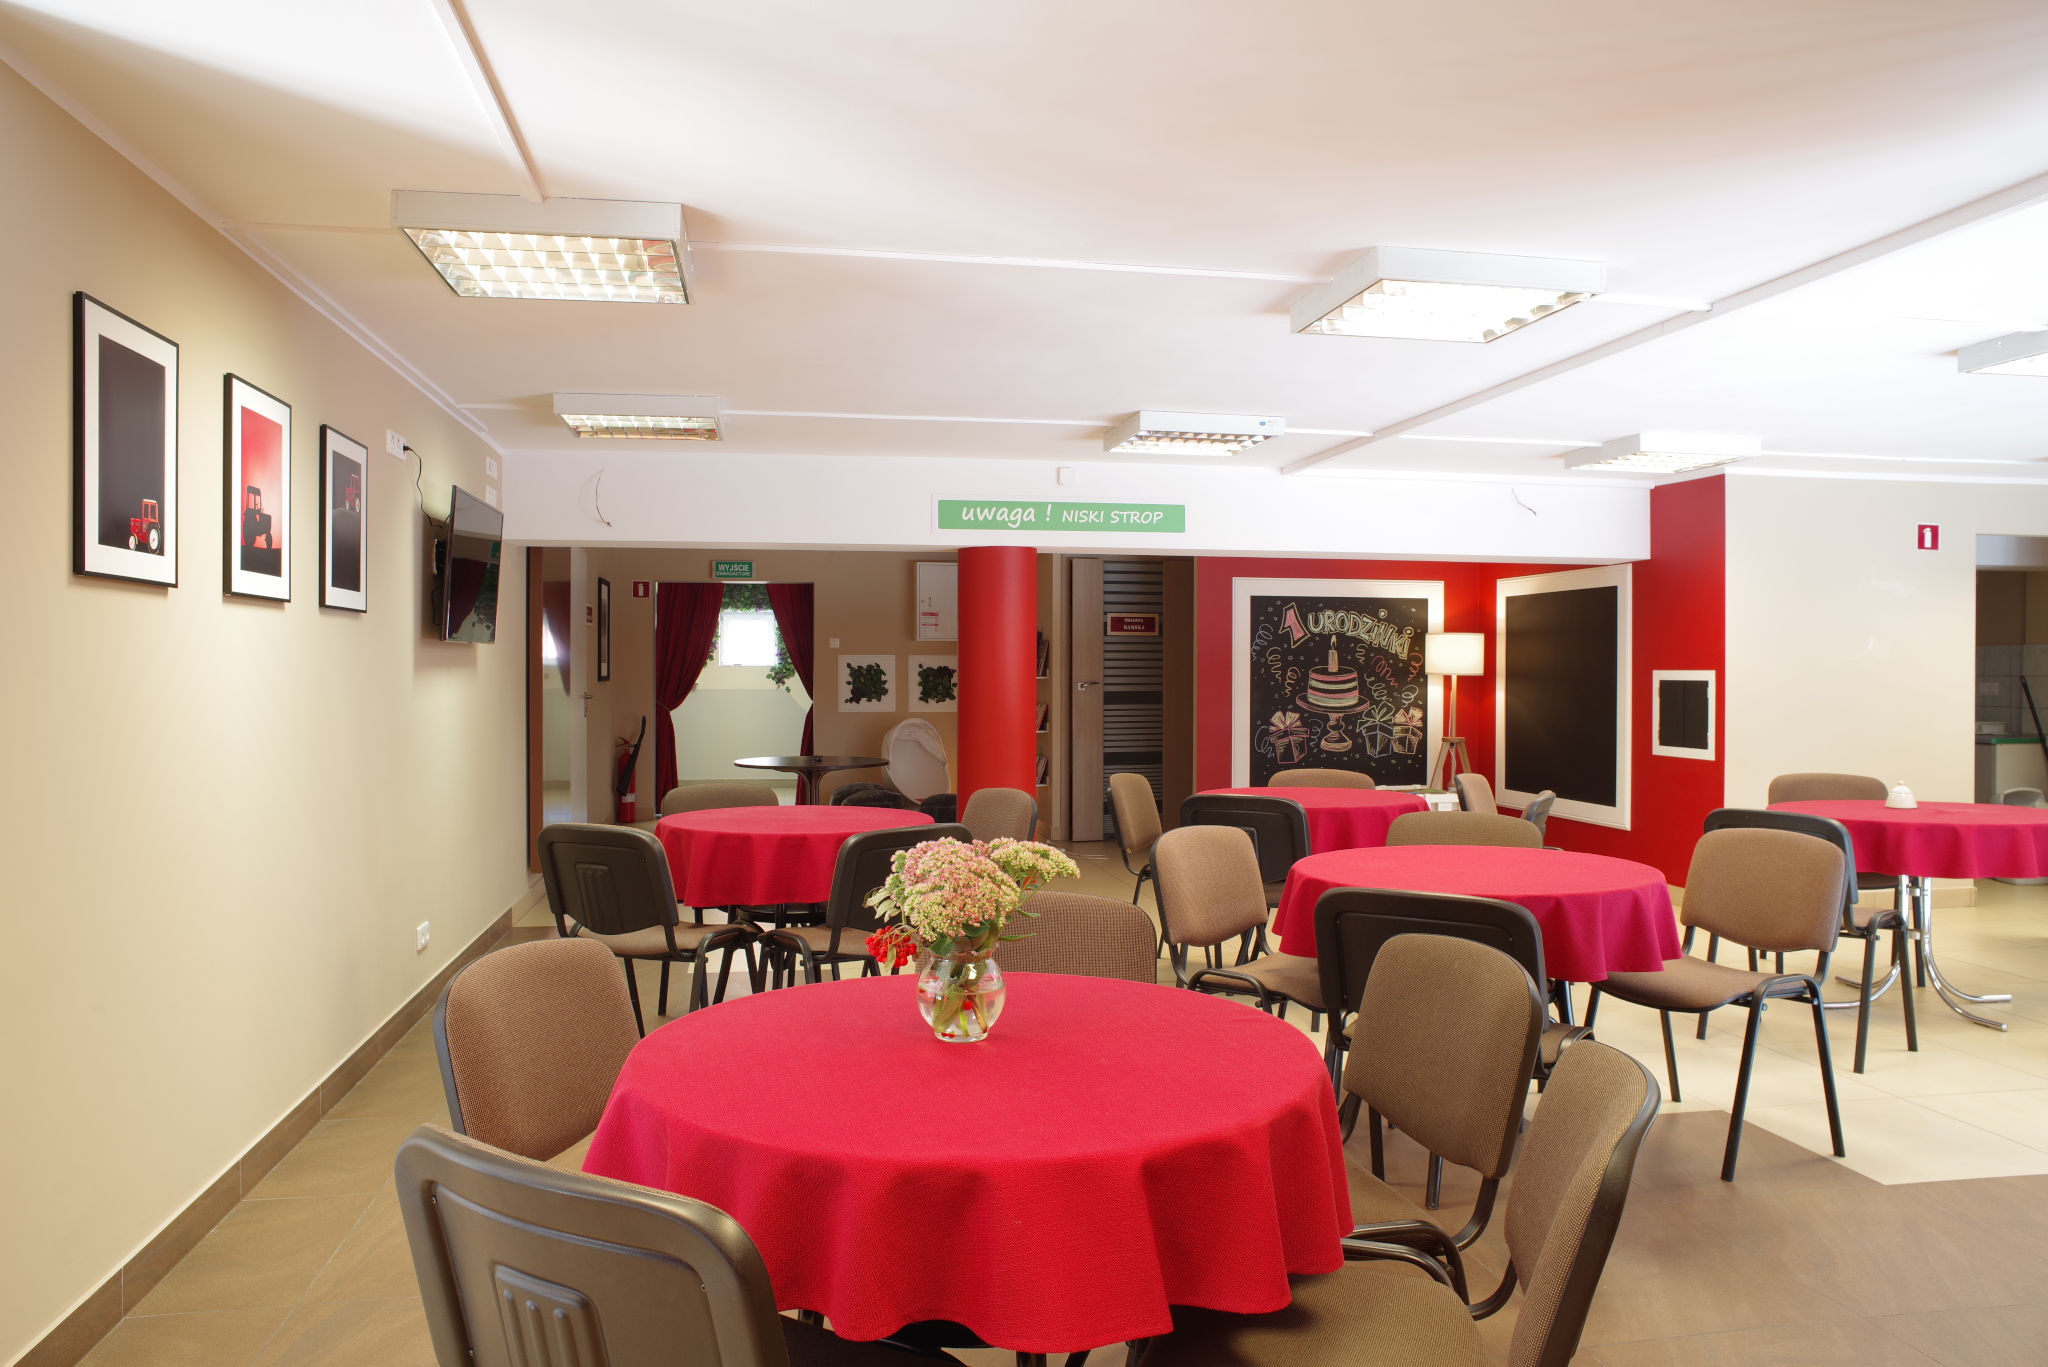 Sala na spotkanie, na pierwszym planie kilka stolików kawiarnianych, okrągłych z czerwonym obrusem. Rozstawione krzesła wokół. Na ścianie obrazy w antyramach.